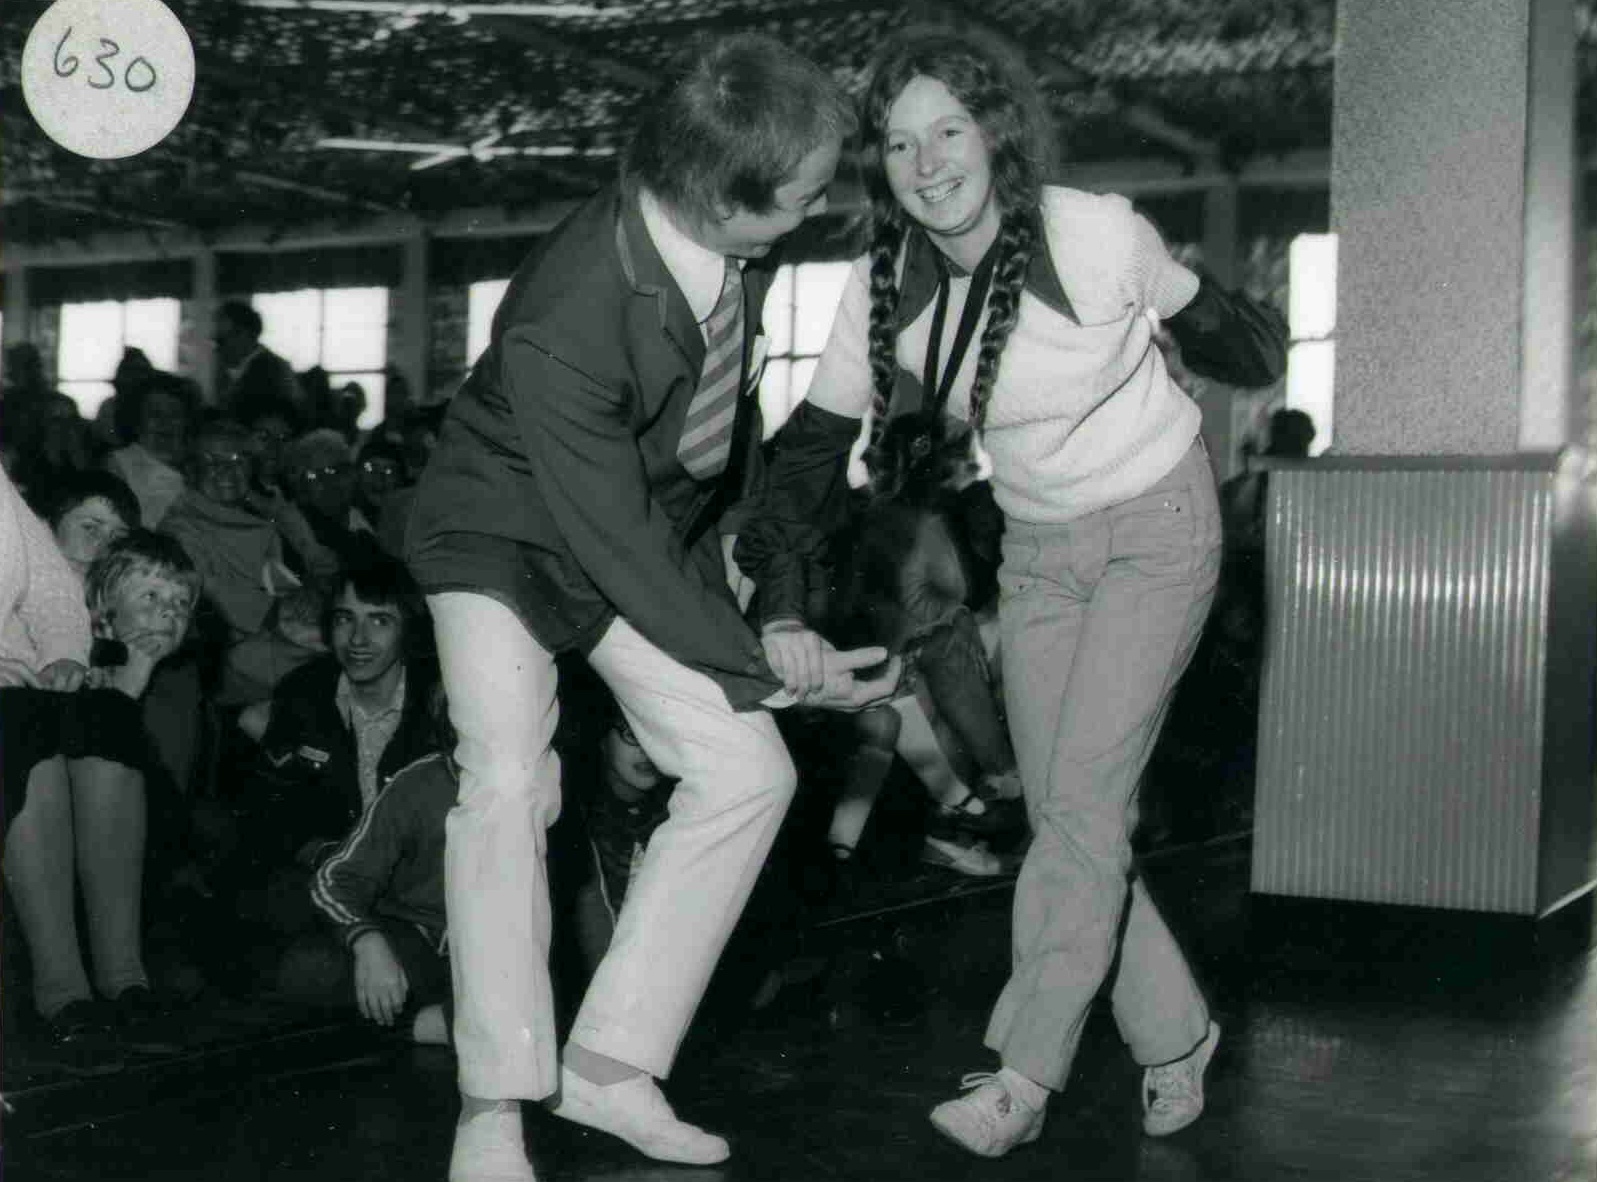 Butlins Skegness 1973 Dave at Redcoats Reunited 2